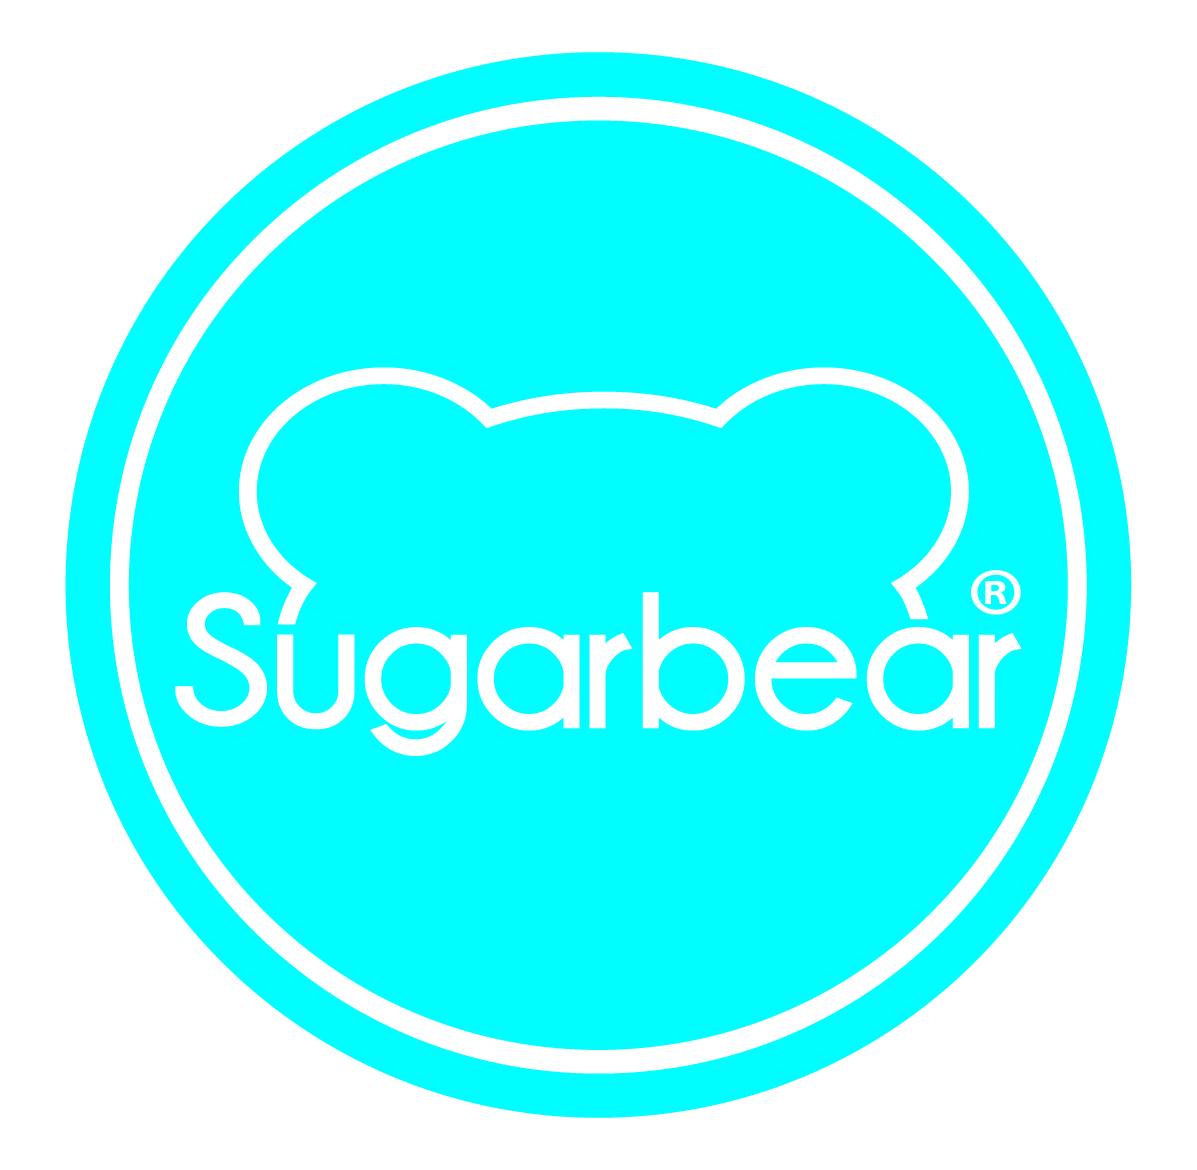 Sugar Bear Hair